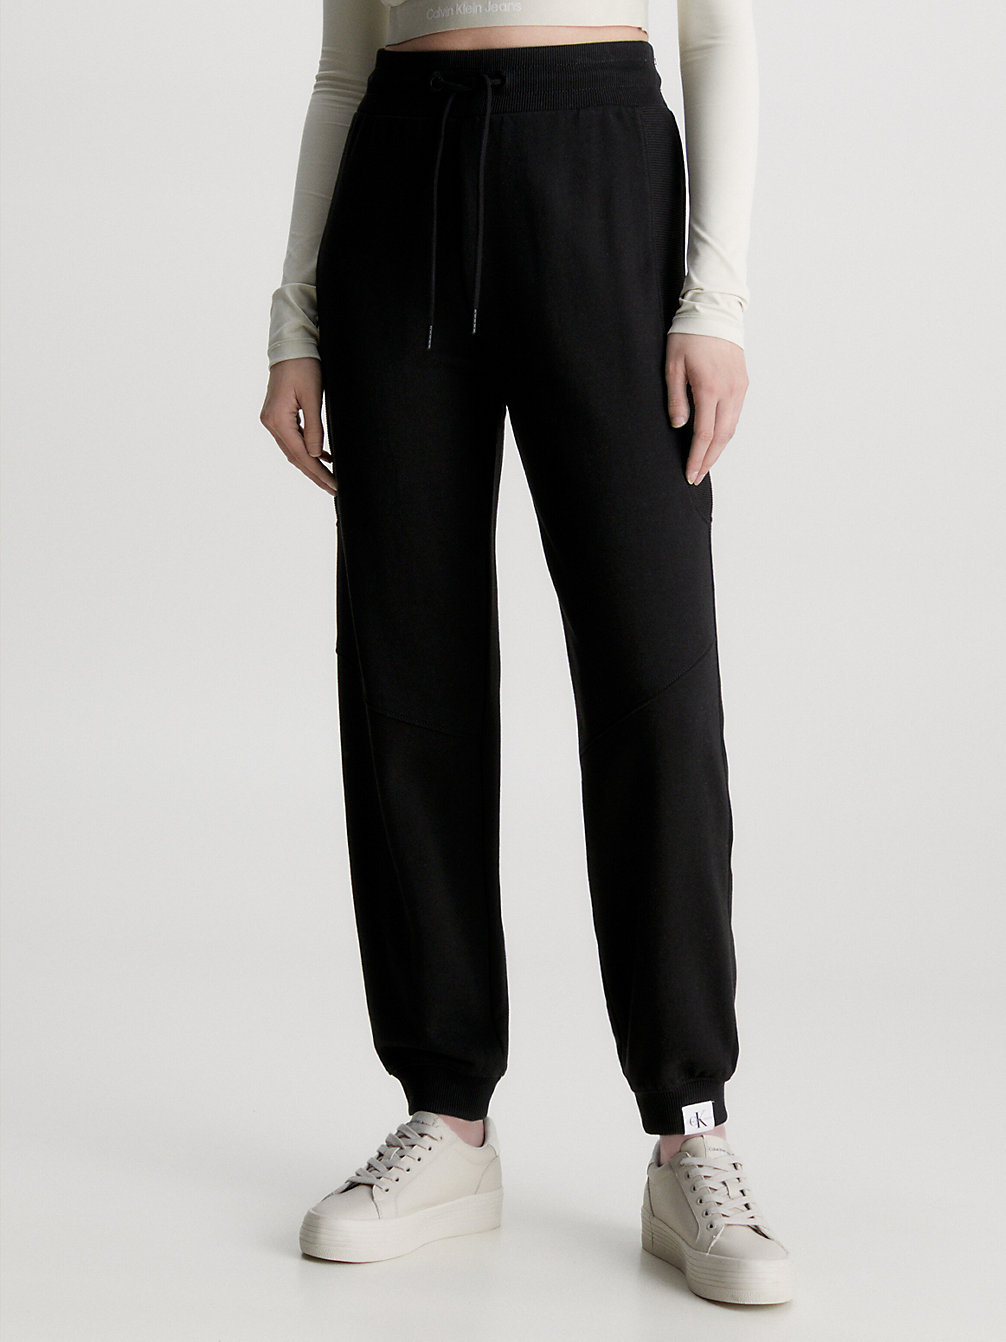 CK BLACK > Spodnie Dresowe Z Bawełny Organicznej > undefined Kobiety - Calvin Klein